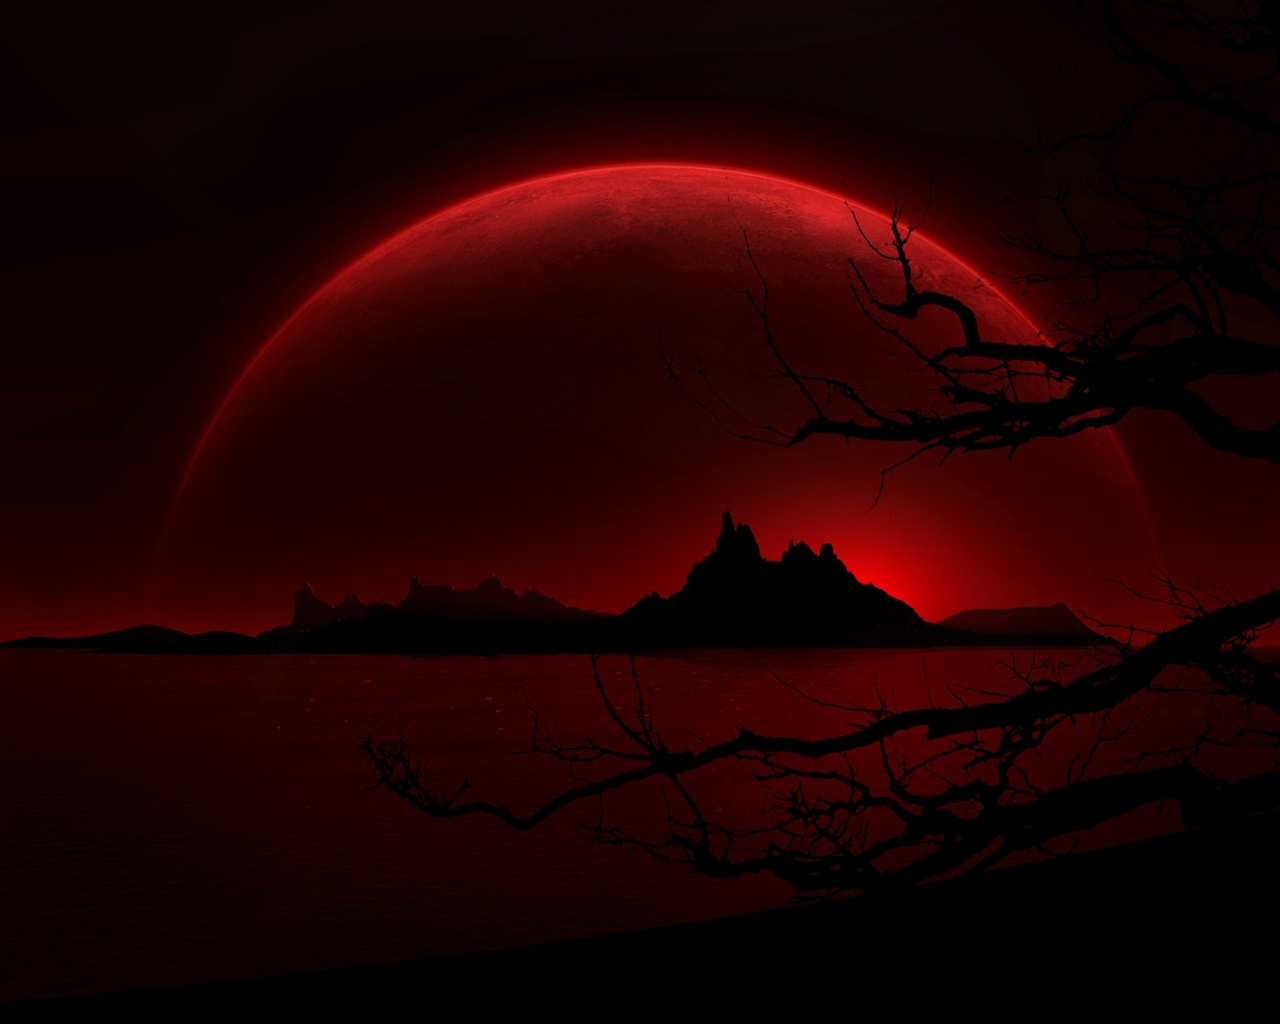 Dark Red Night for 1280 x 1024 resolution